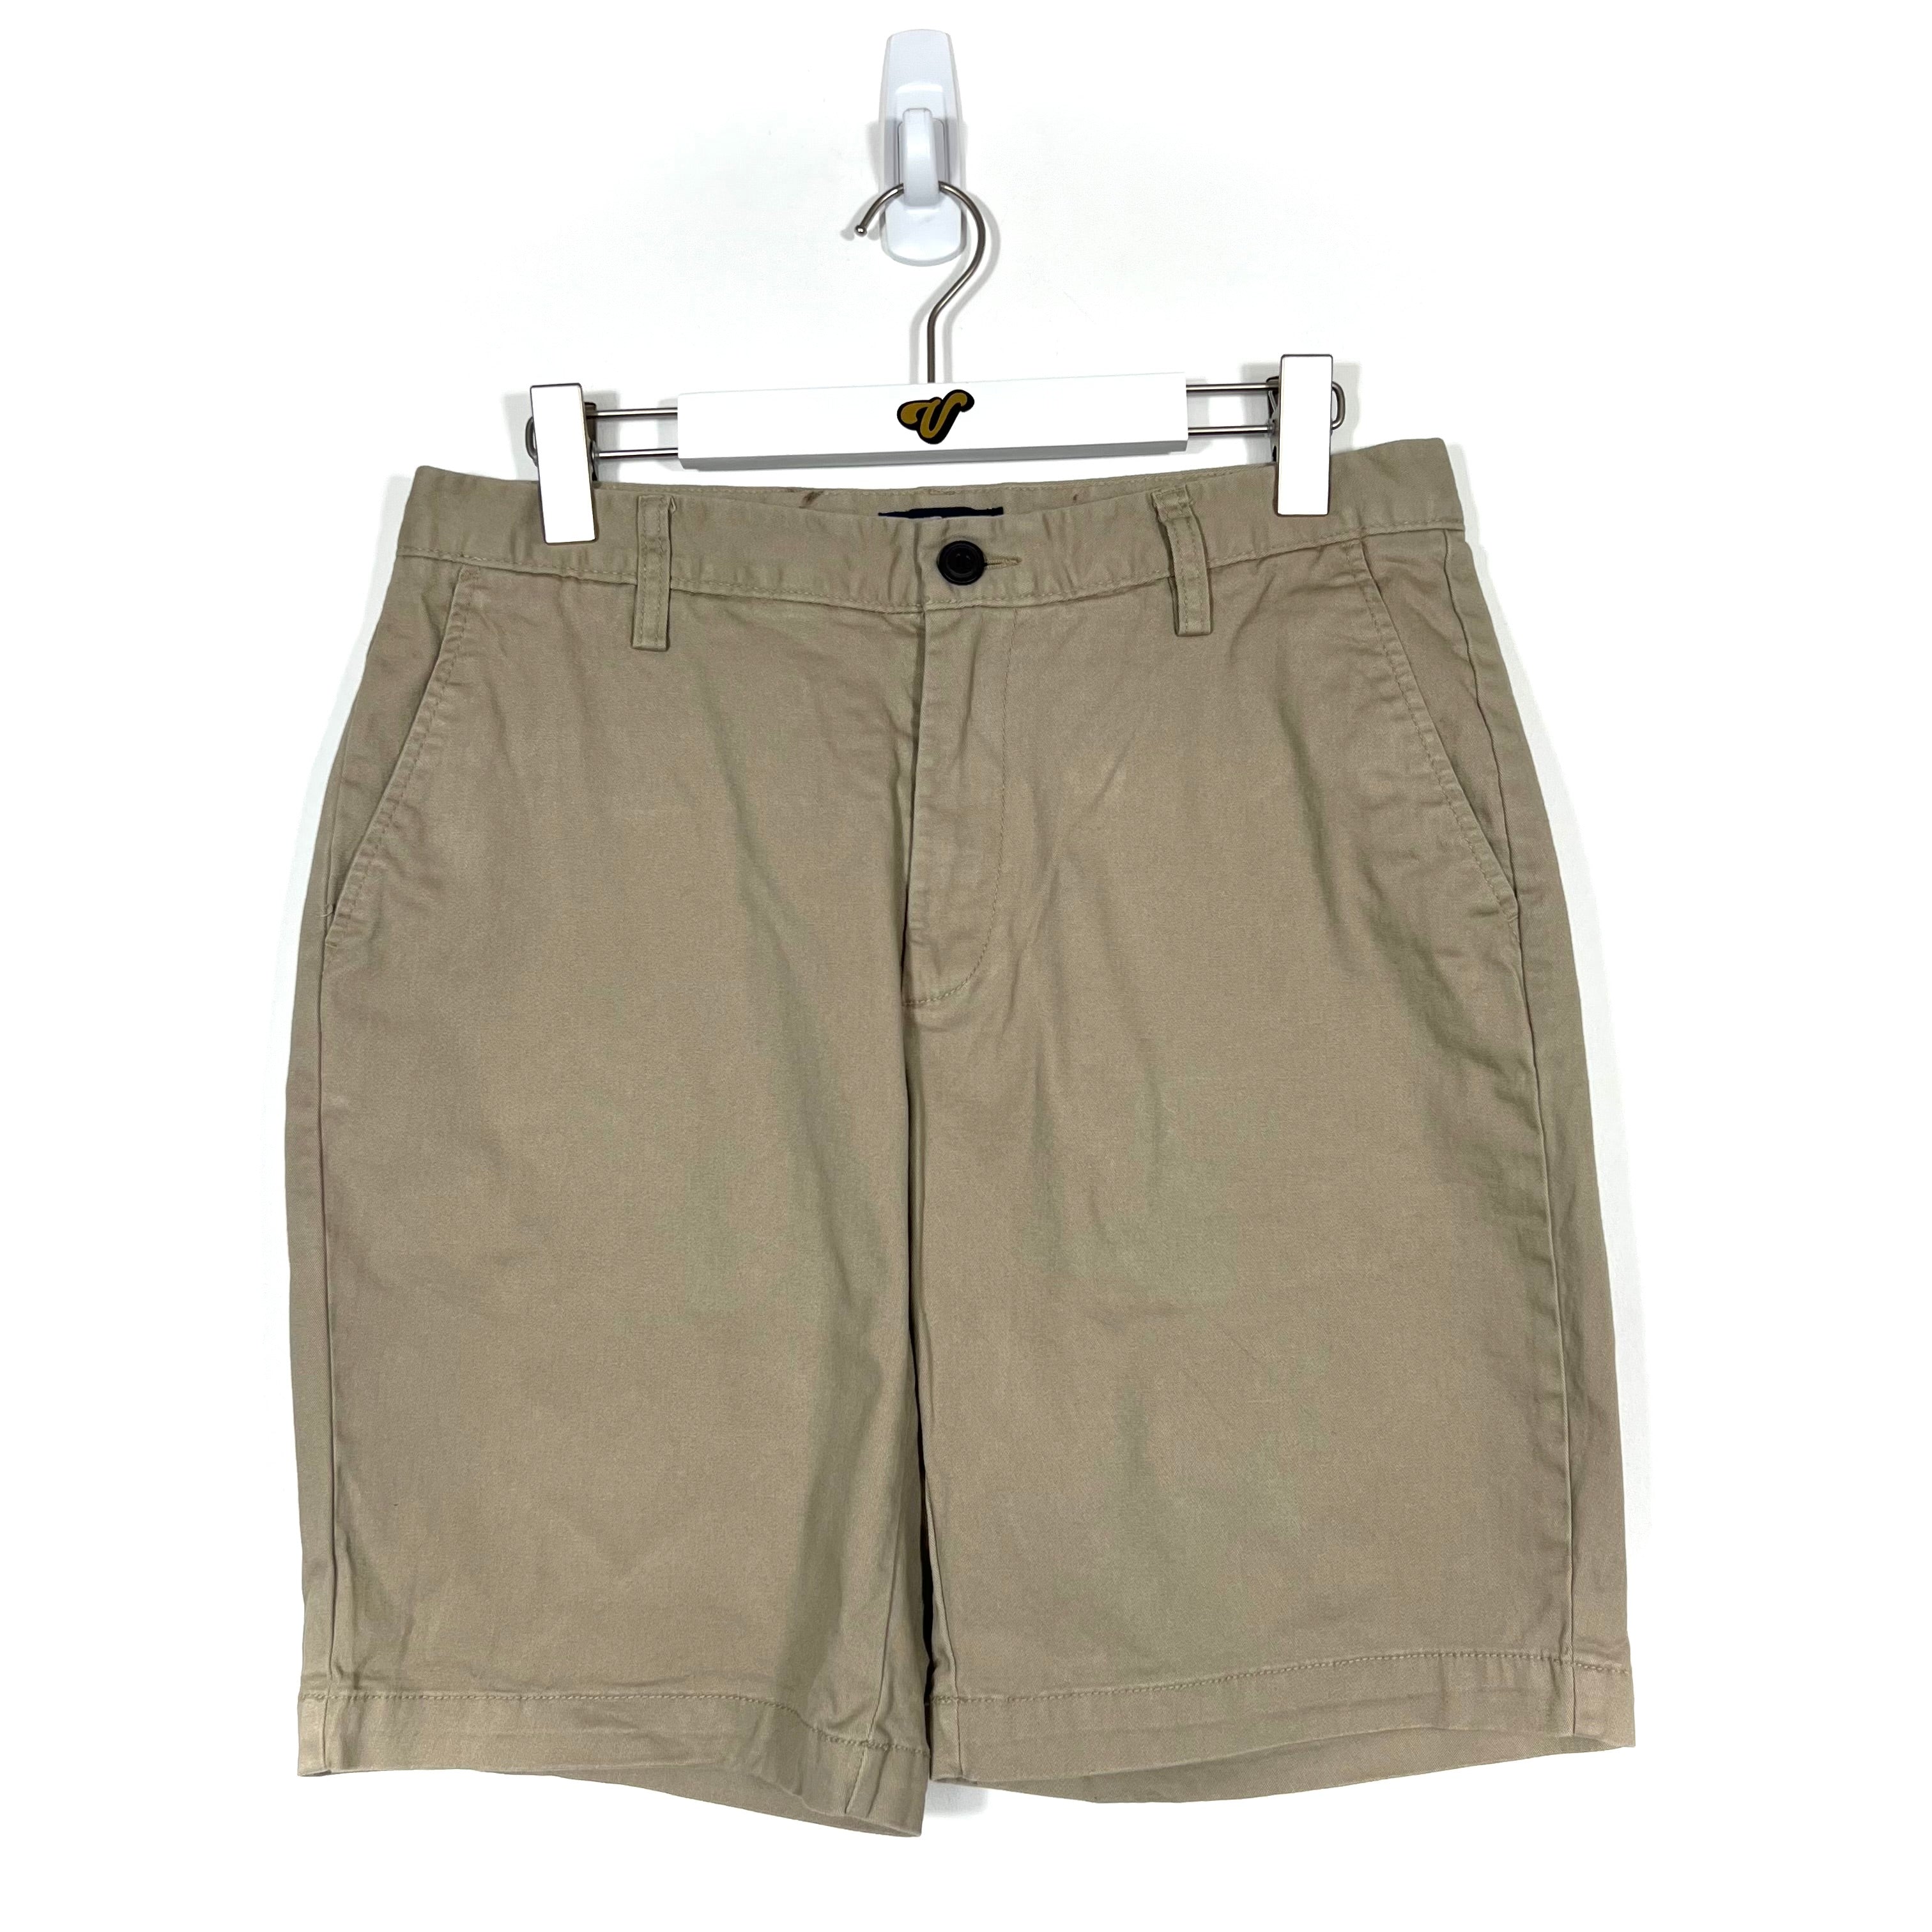 Nautica Chino Shorts - Men's 32